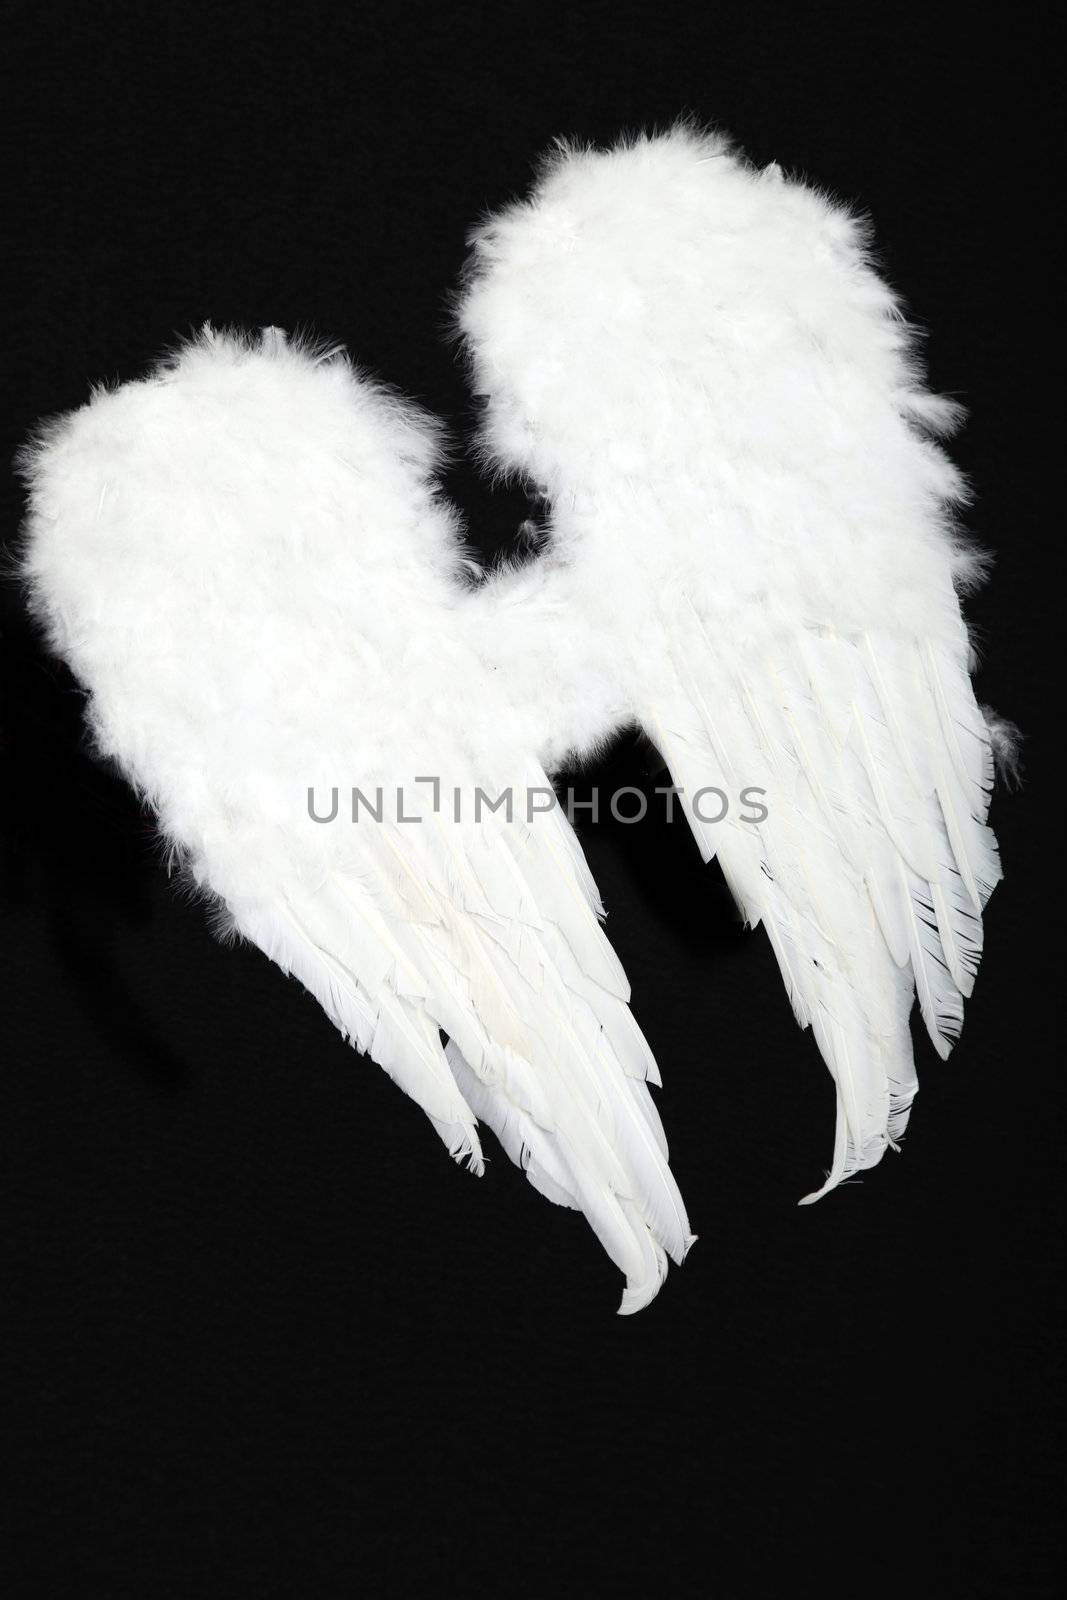 Pair of angel wings on black background